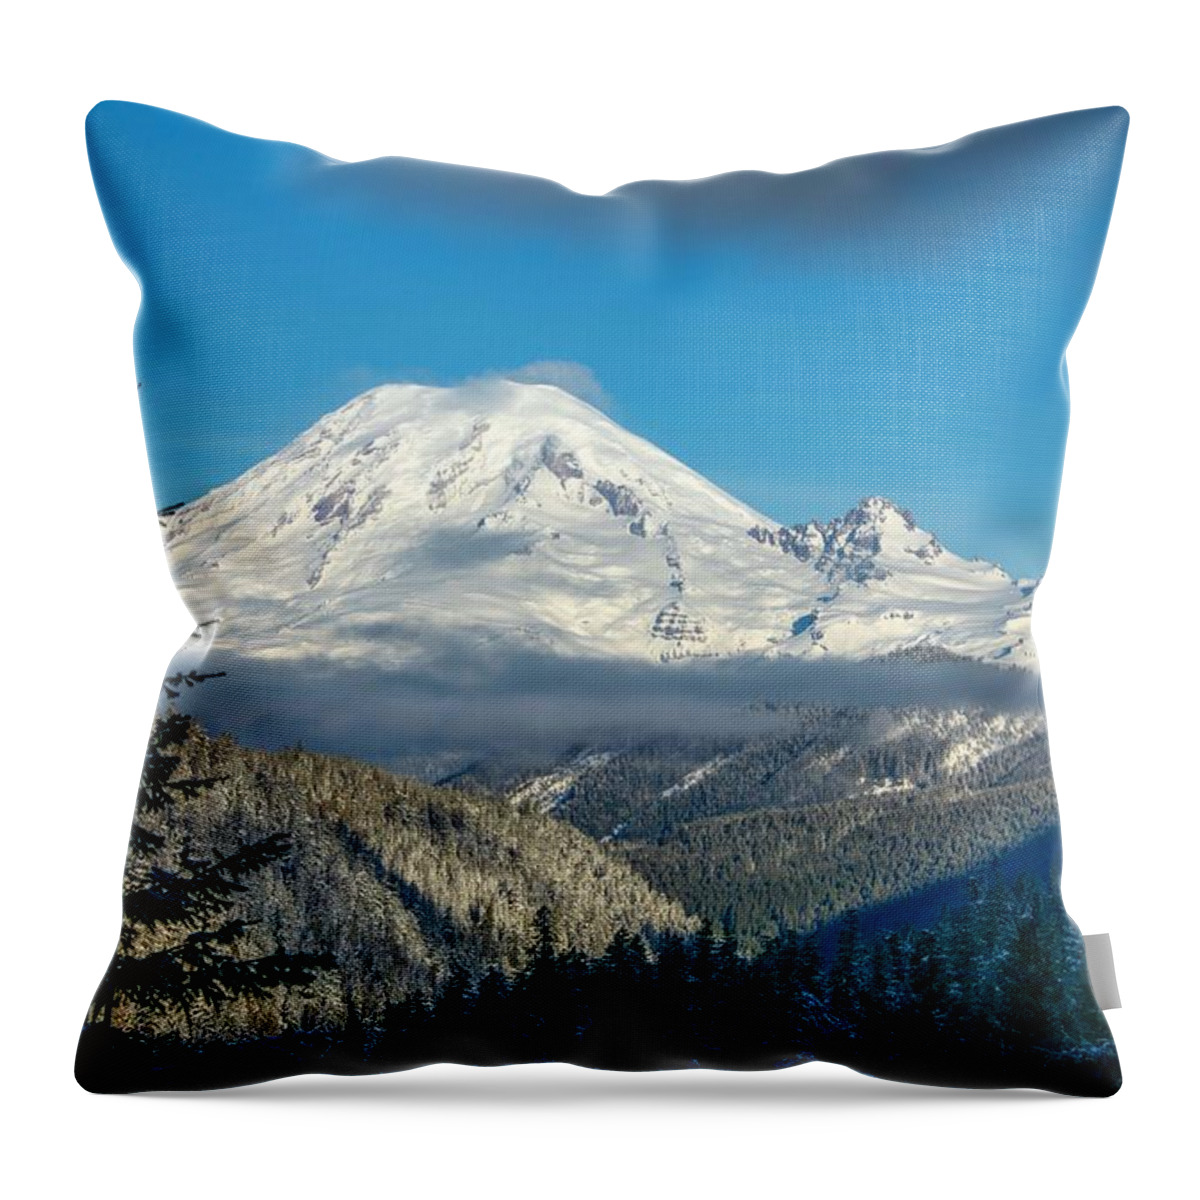 Mount Rainier Appearance Throw Pillow featuring the photograph Mount Rainier appearance by Lynn Hopwood